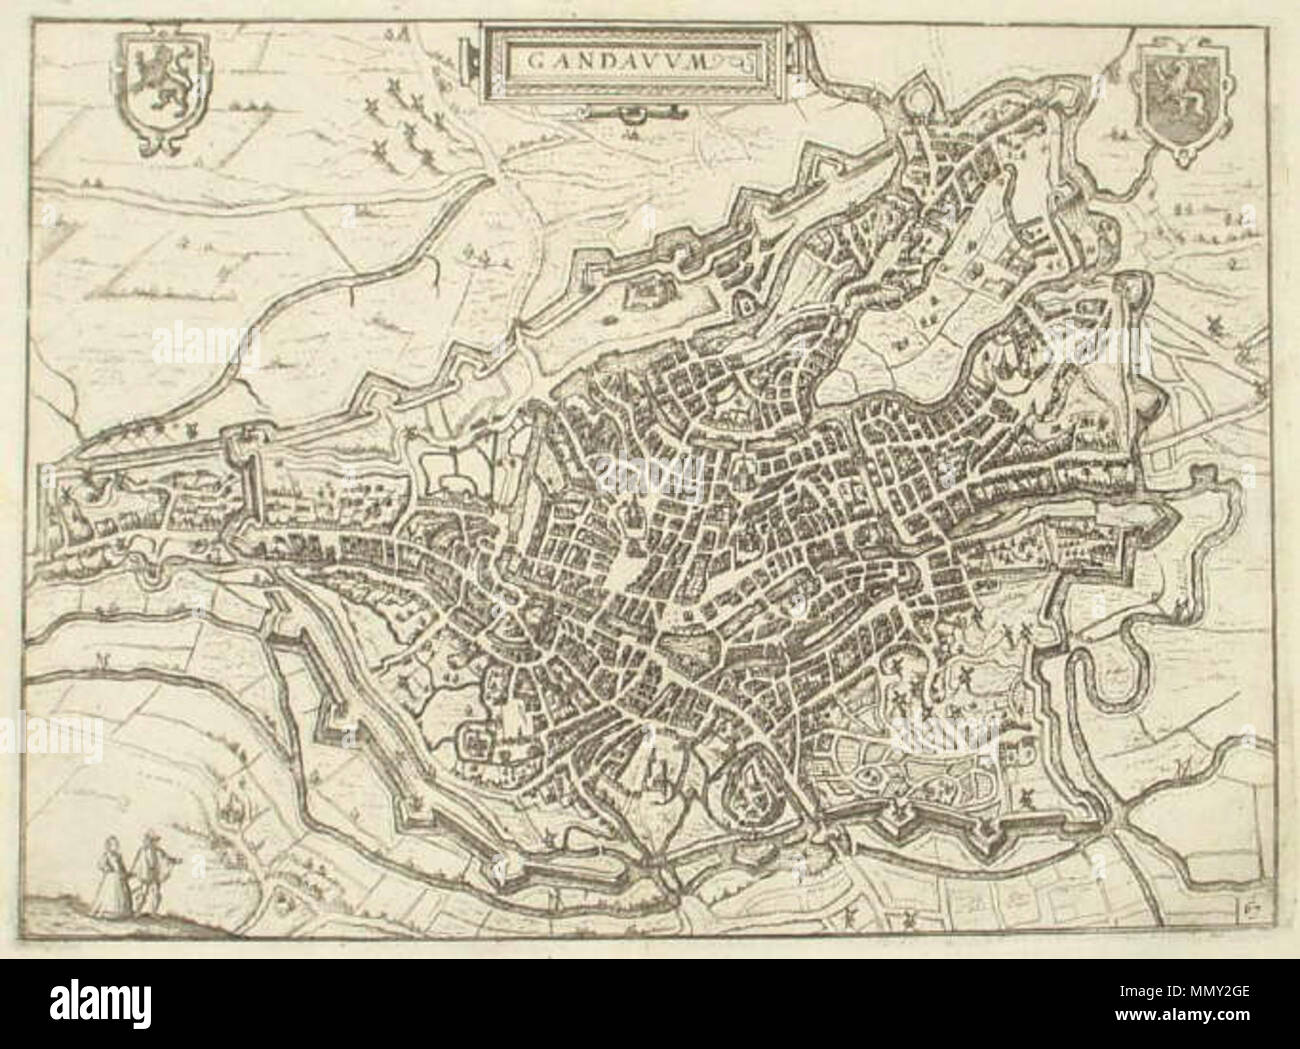 English: Gandavum 1648 Gegraveerde kaart van de stad Gent door L.  Guicciardini Uit: Beschryving van alle de Nederlanden. (Janssonius 1648)  Kaart nummer 67. Afmeting 31 x 23 cm. Niet ingelijst. Kaart